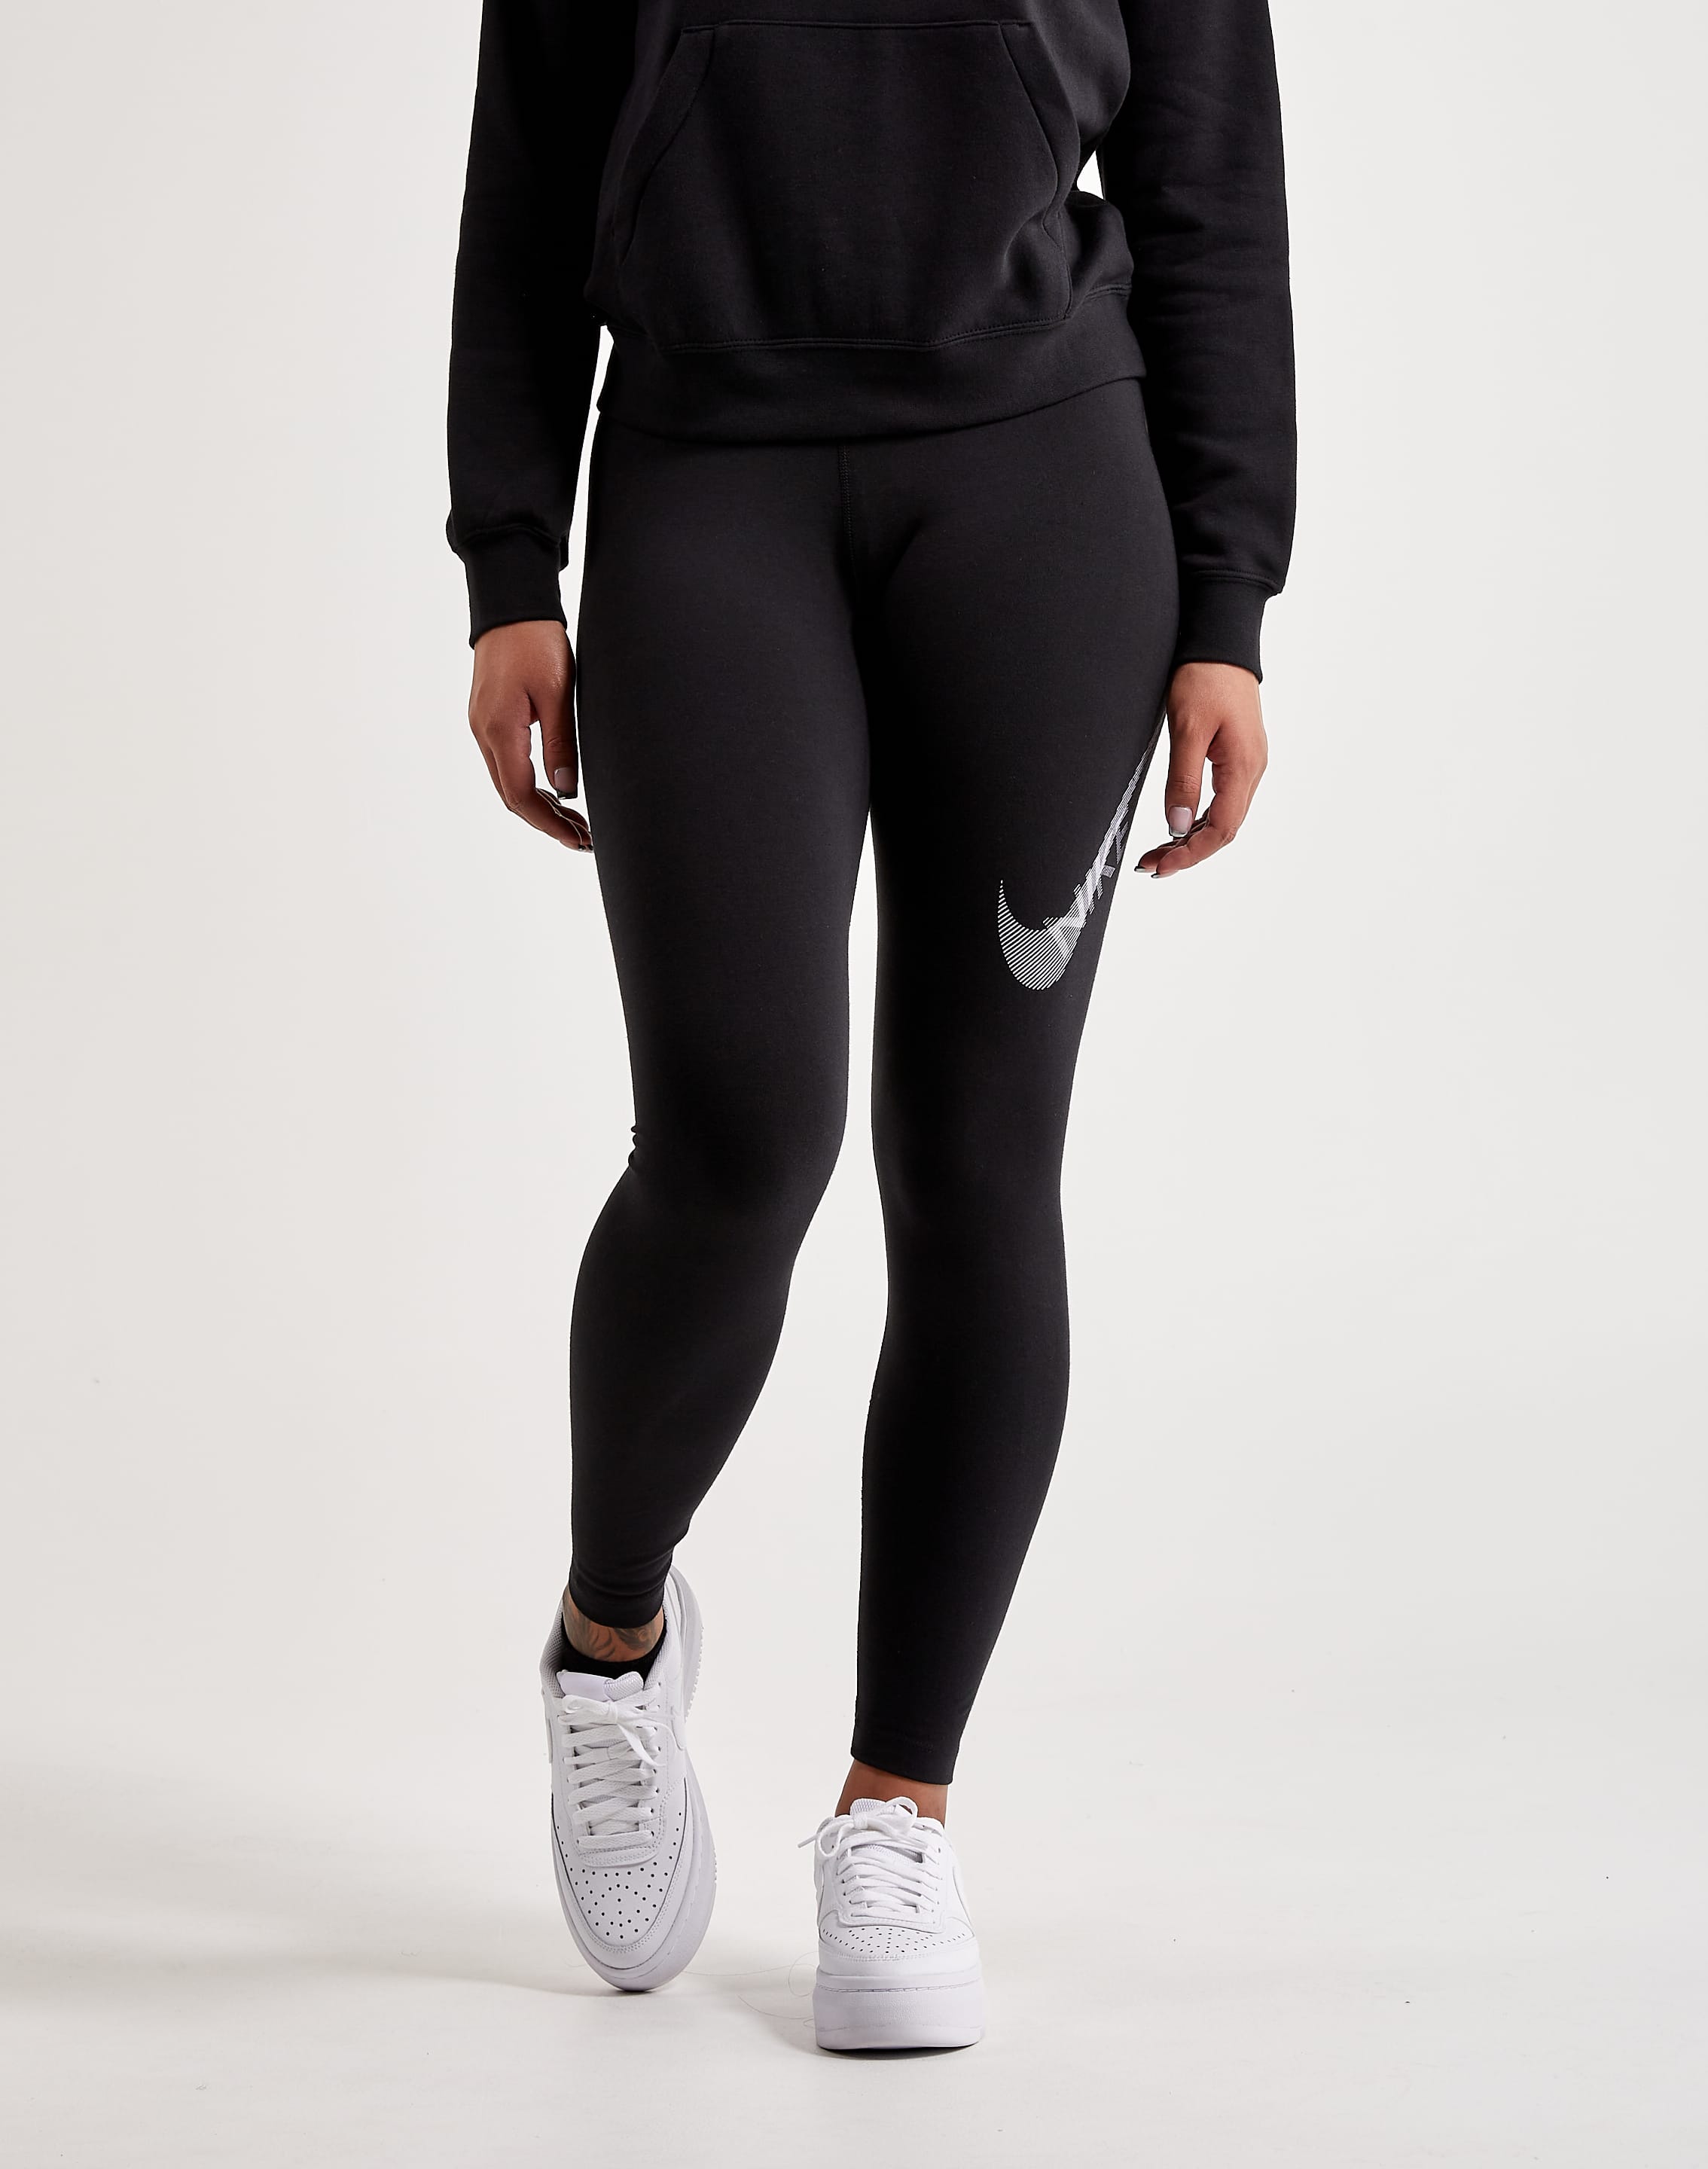 Buy Nike Women Leggings, Nike Women Clothes